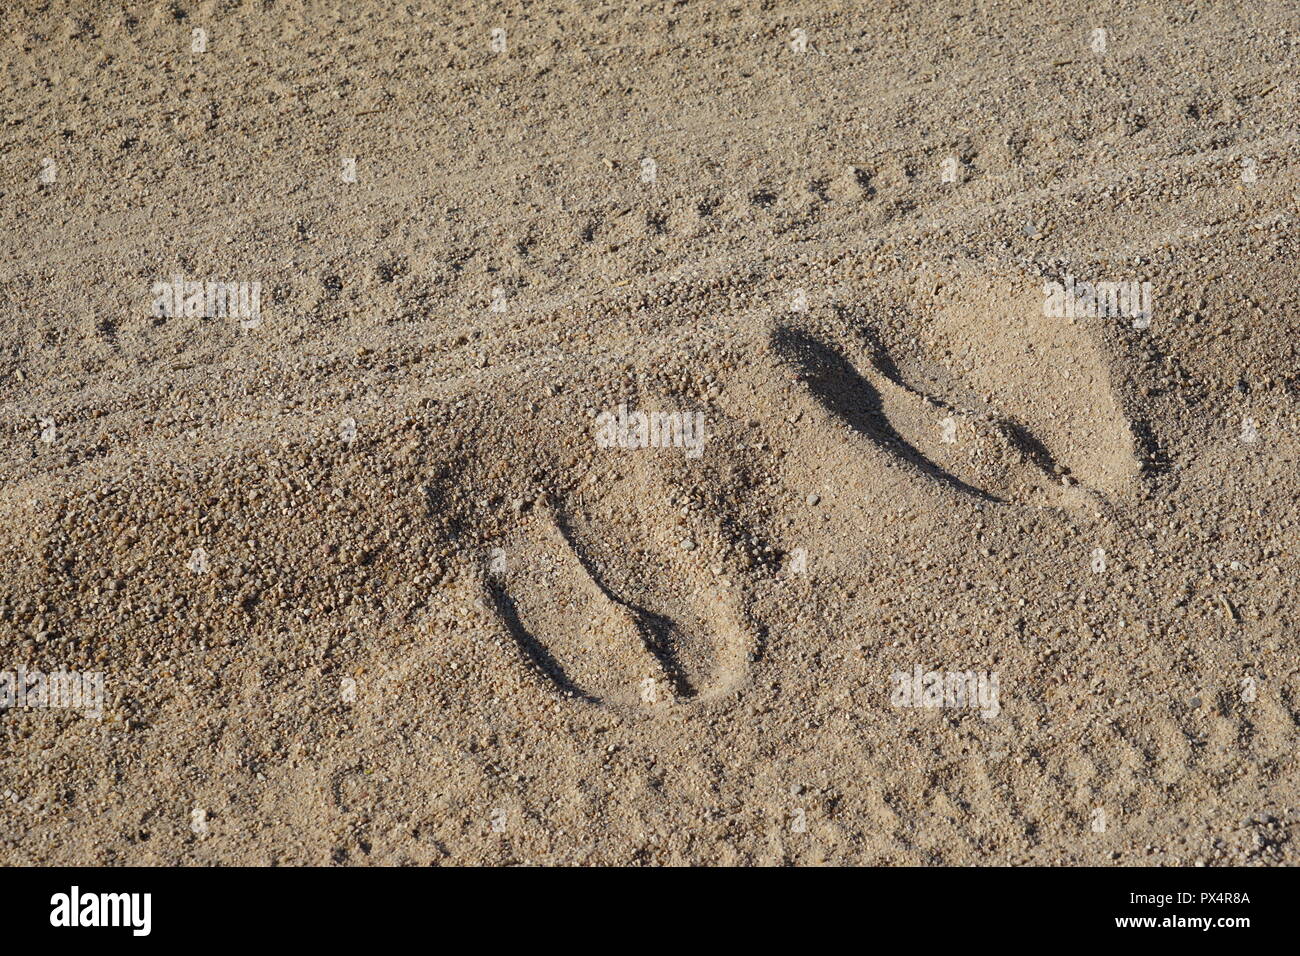 Giraffenspuren, Fußabdruck einer Giraffe im Sand einer unbefestigten Straße, Namibia, Afrika Stock Photo